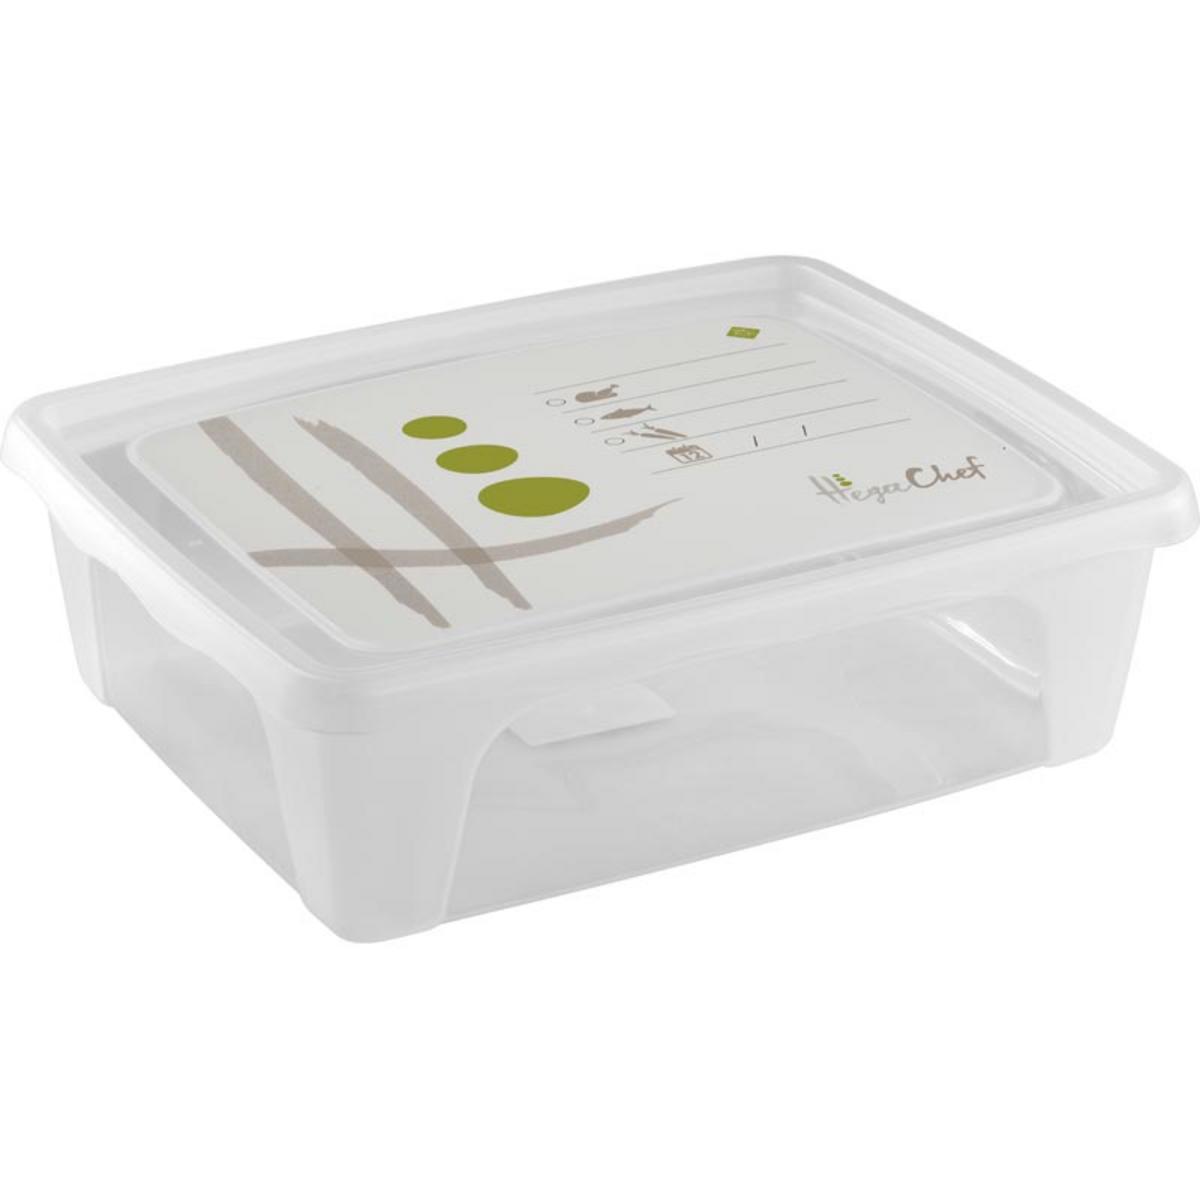 Boîte alimentaire rectangulaire en plastique - 2,5 L - 24 x 19,5 x 7,5 cm - Différents coloris